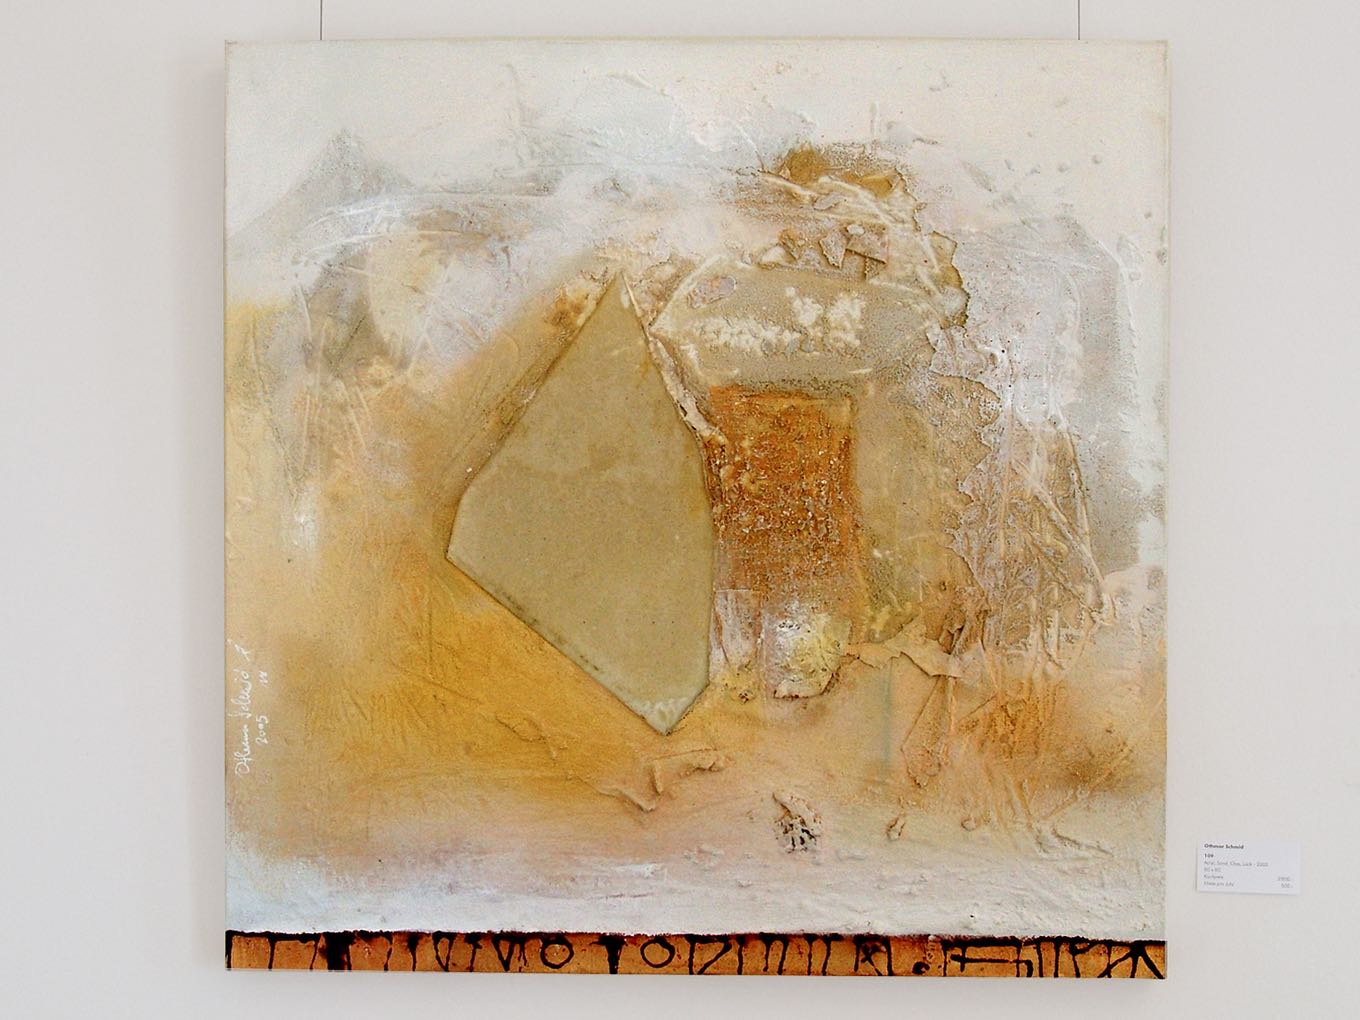 Annemarie Graf: Ohne titel, 2005, Acryl, Sand, Glas, Lack auf Leinwand, 80 x 80cm